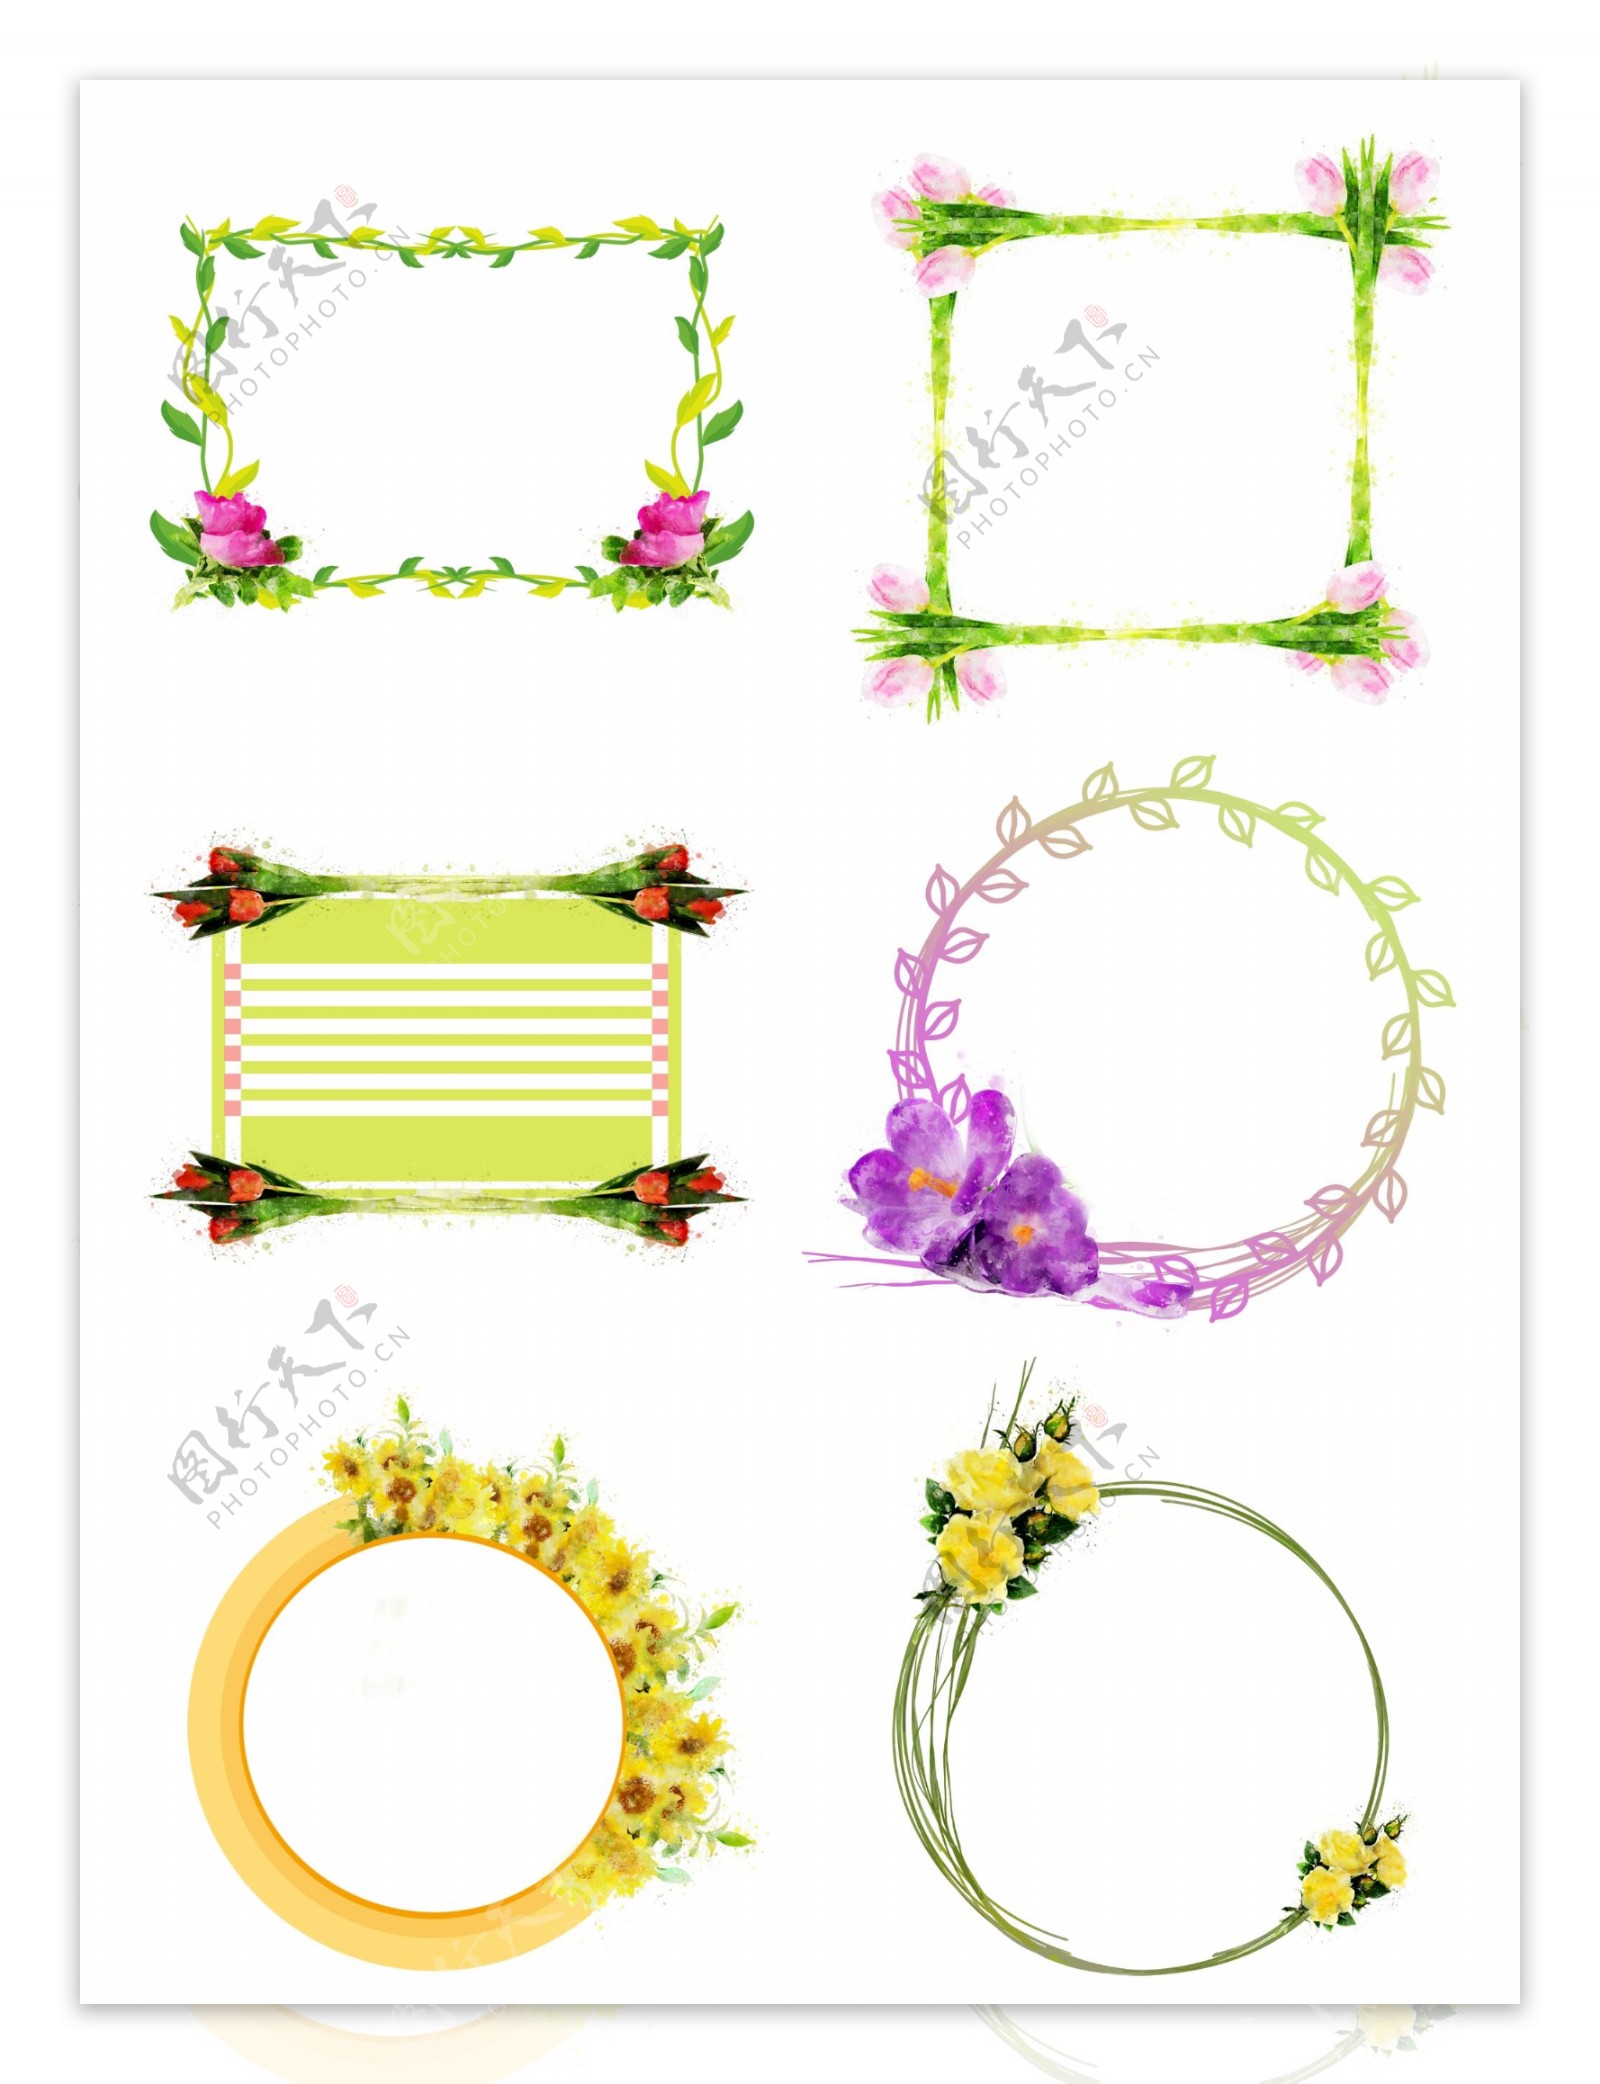 手绘圆形方形植物花卉紫色水彩边框元素合集